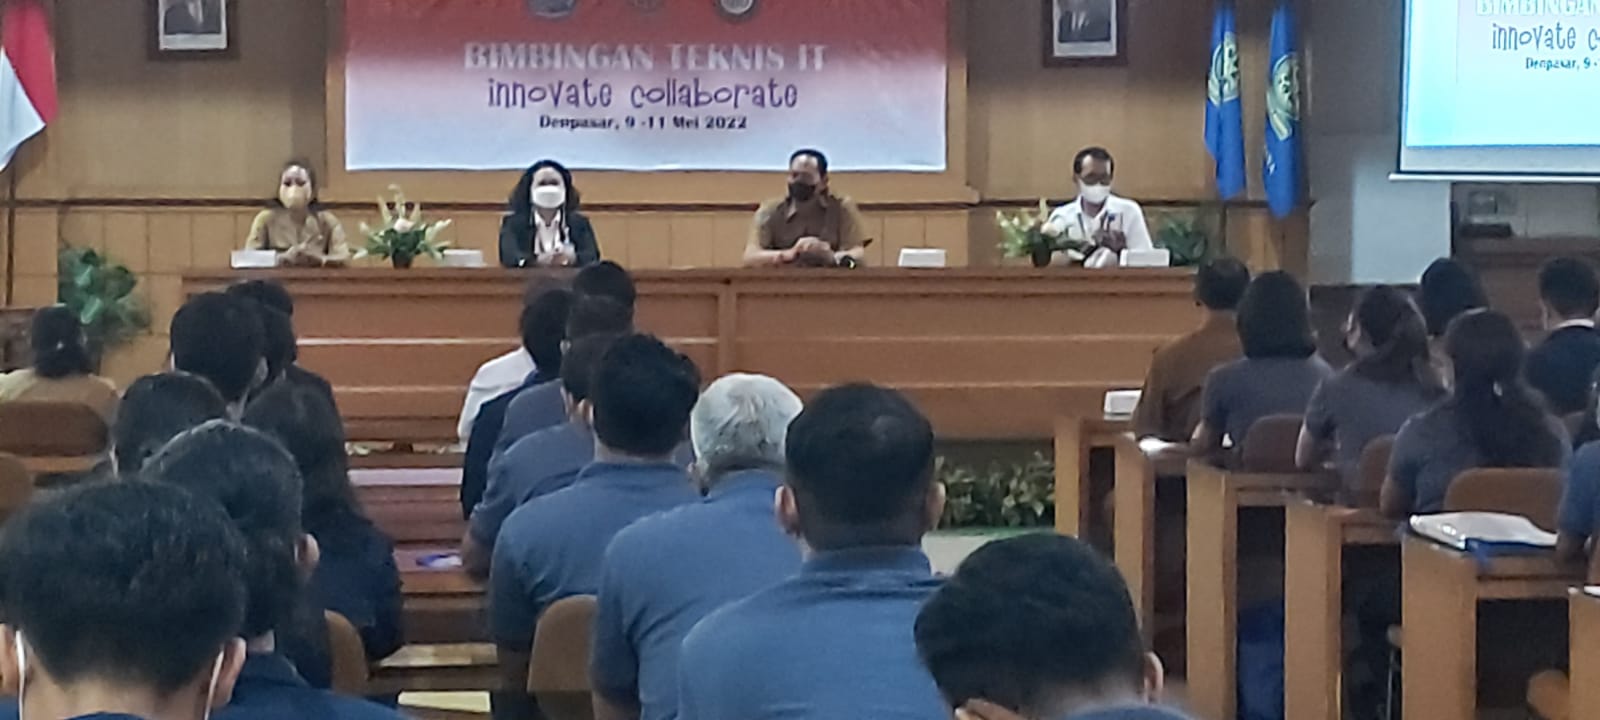 FMIPA Universitas Udayana beserta Dinas Koperasi dan UMKM Kota Denpasar gelar Bimtek IT